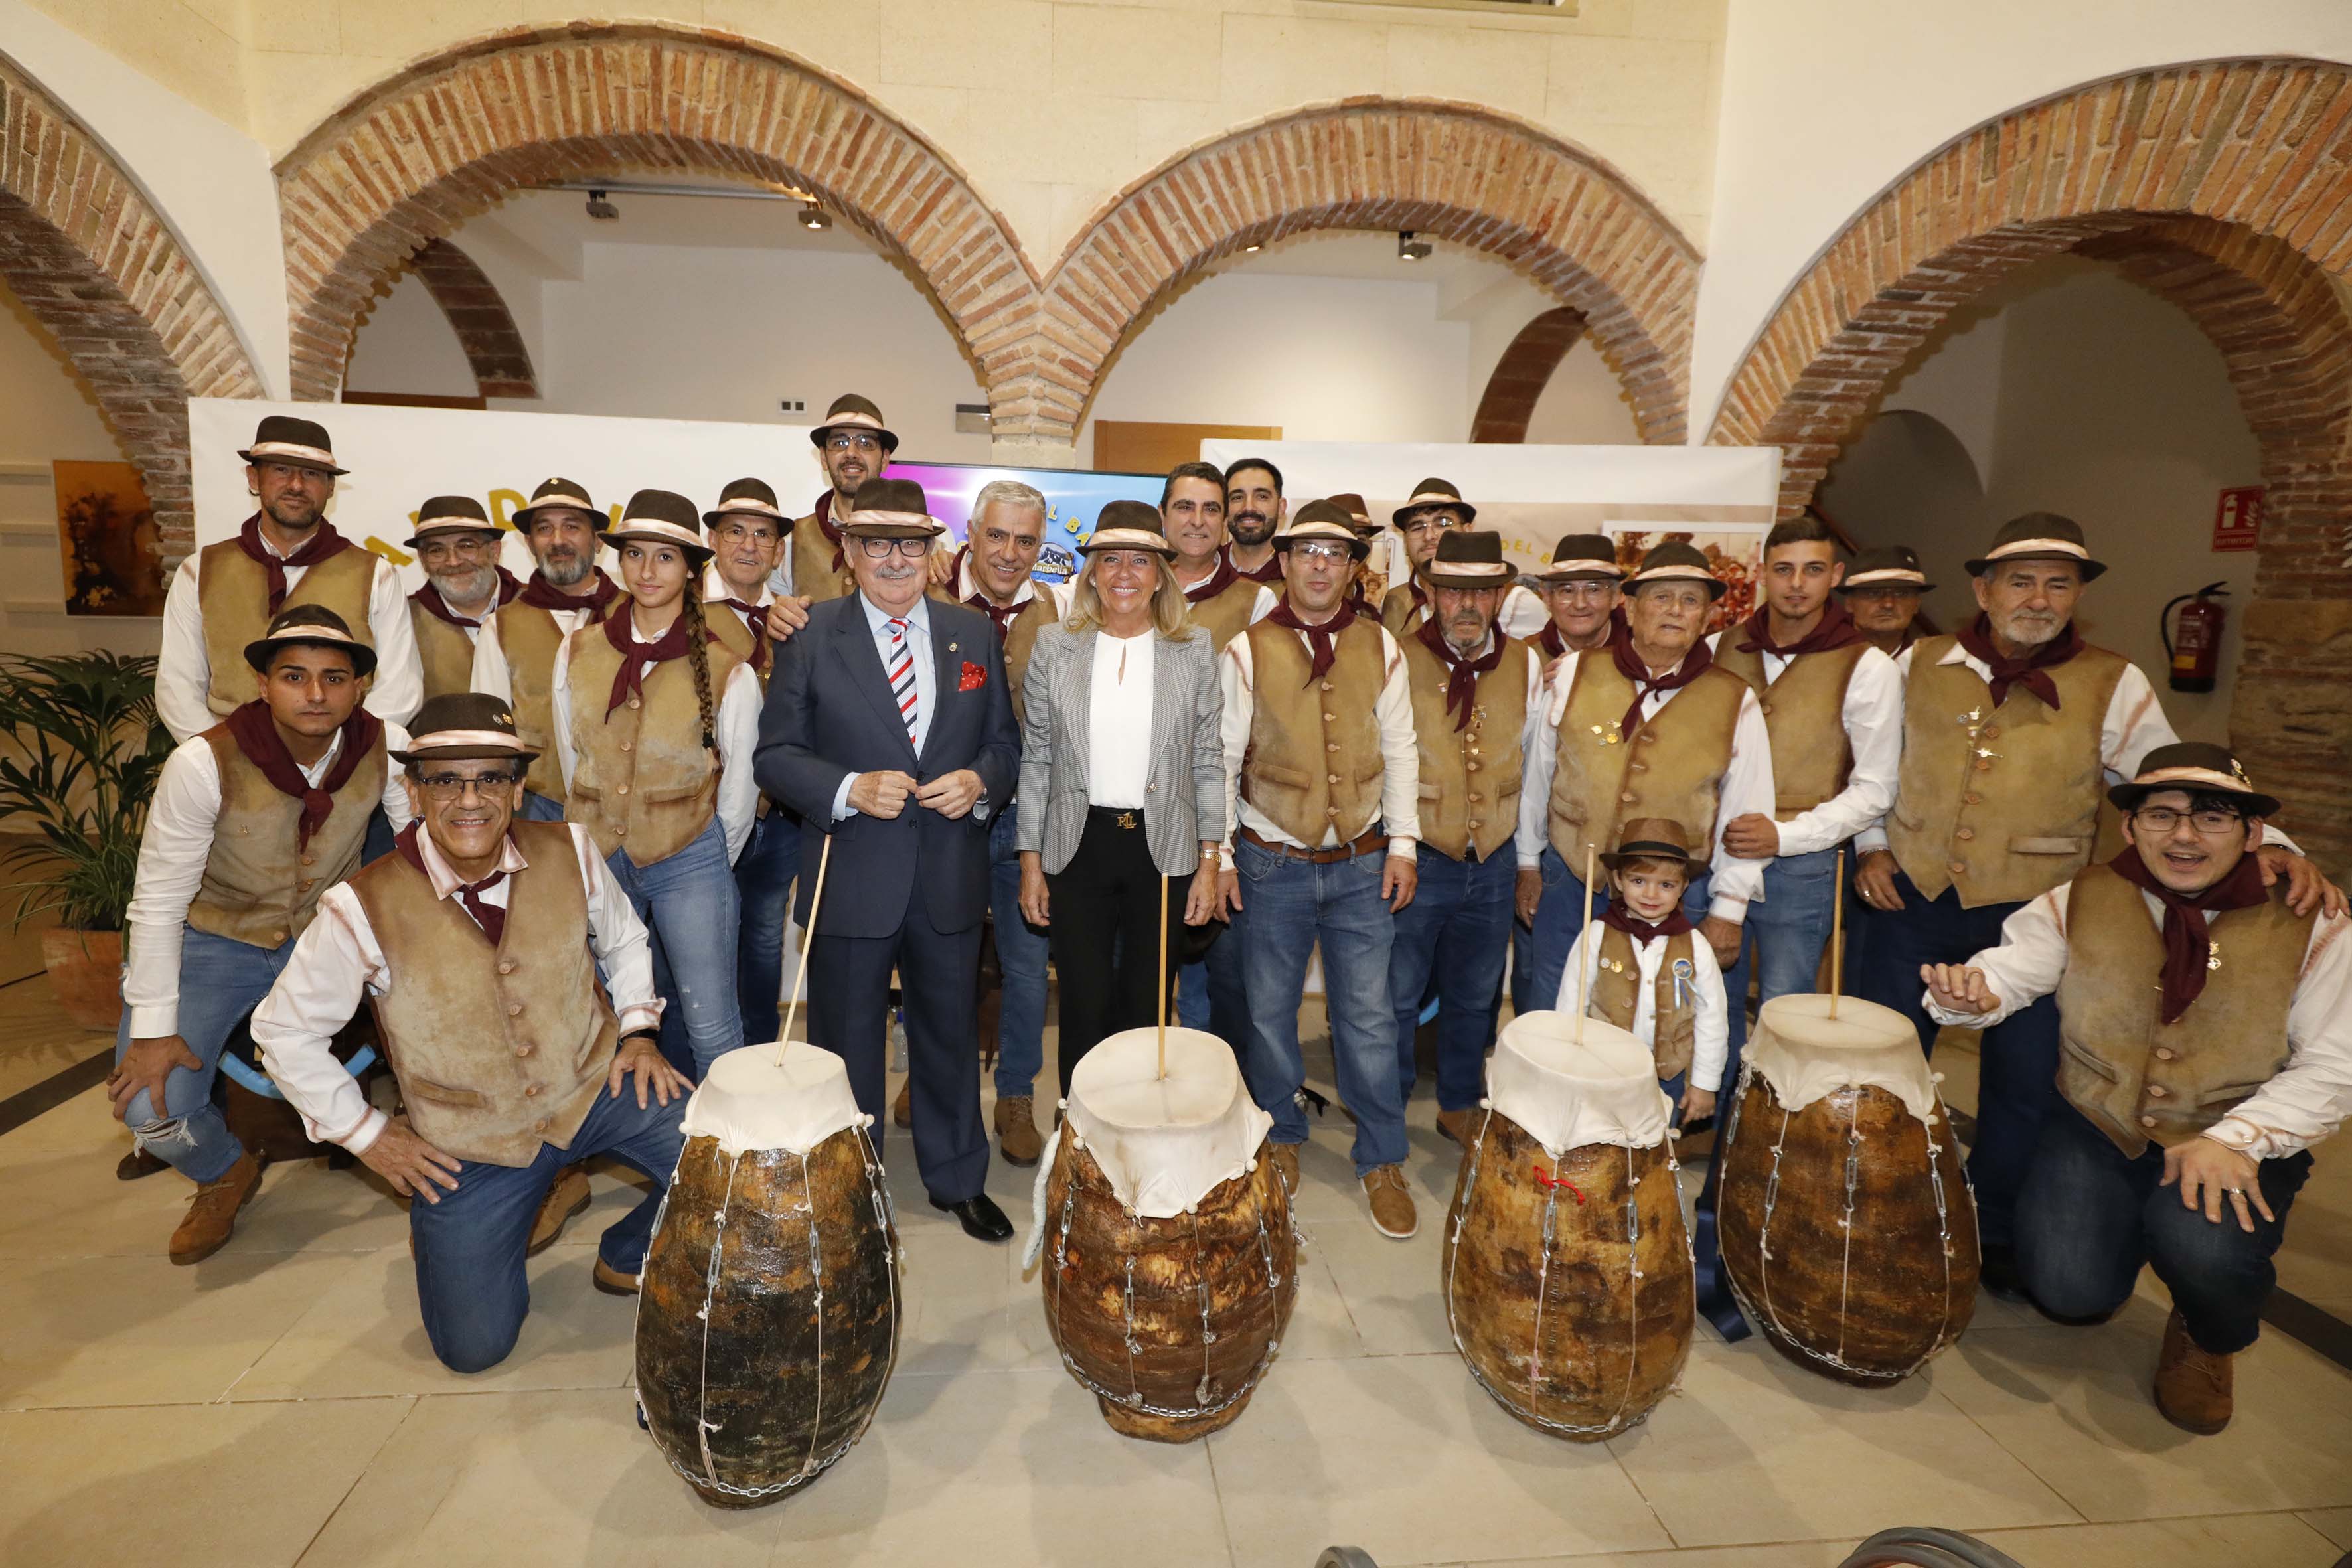 La alcaldesa destaca “el arraigo y la dedicación de la Pastoral del Barbero en el mantenimiento de las tradiciones en Marbella” con motivo de la celebración de su 70 aniversario